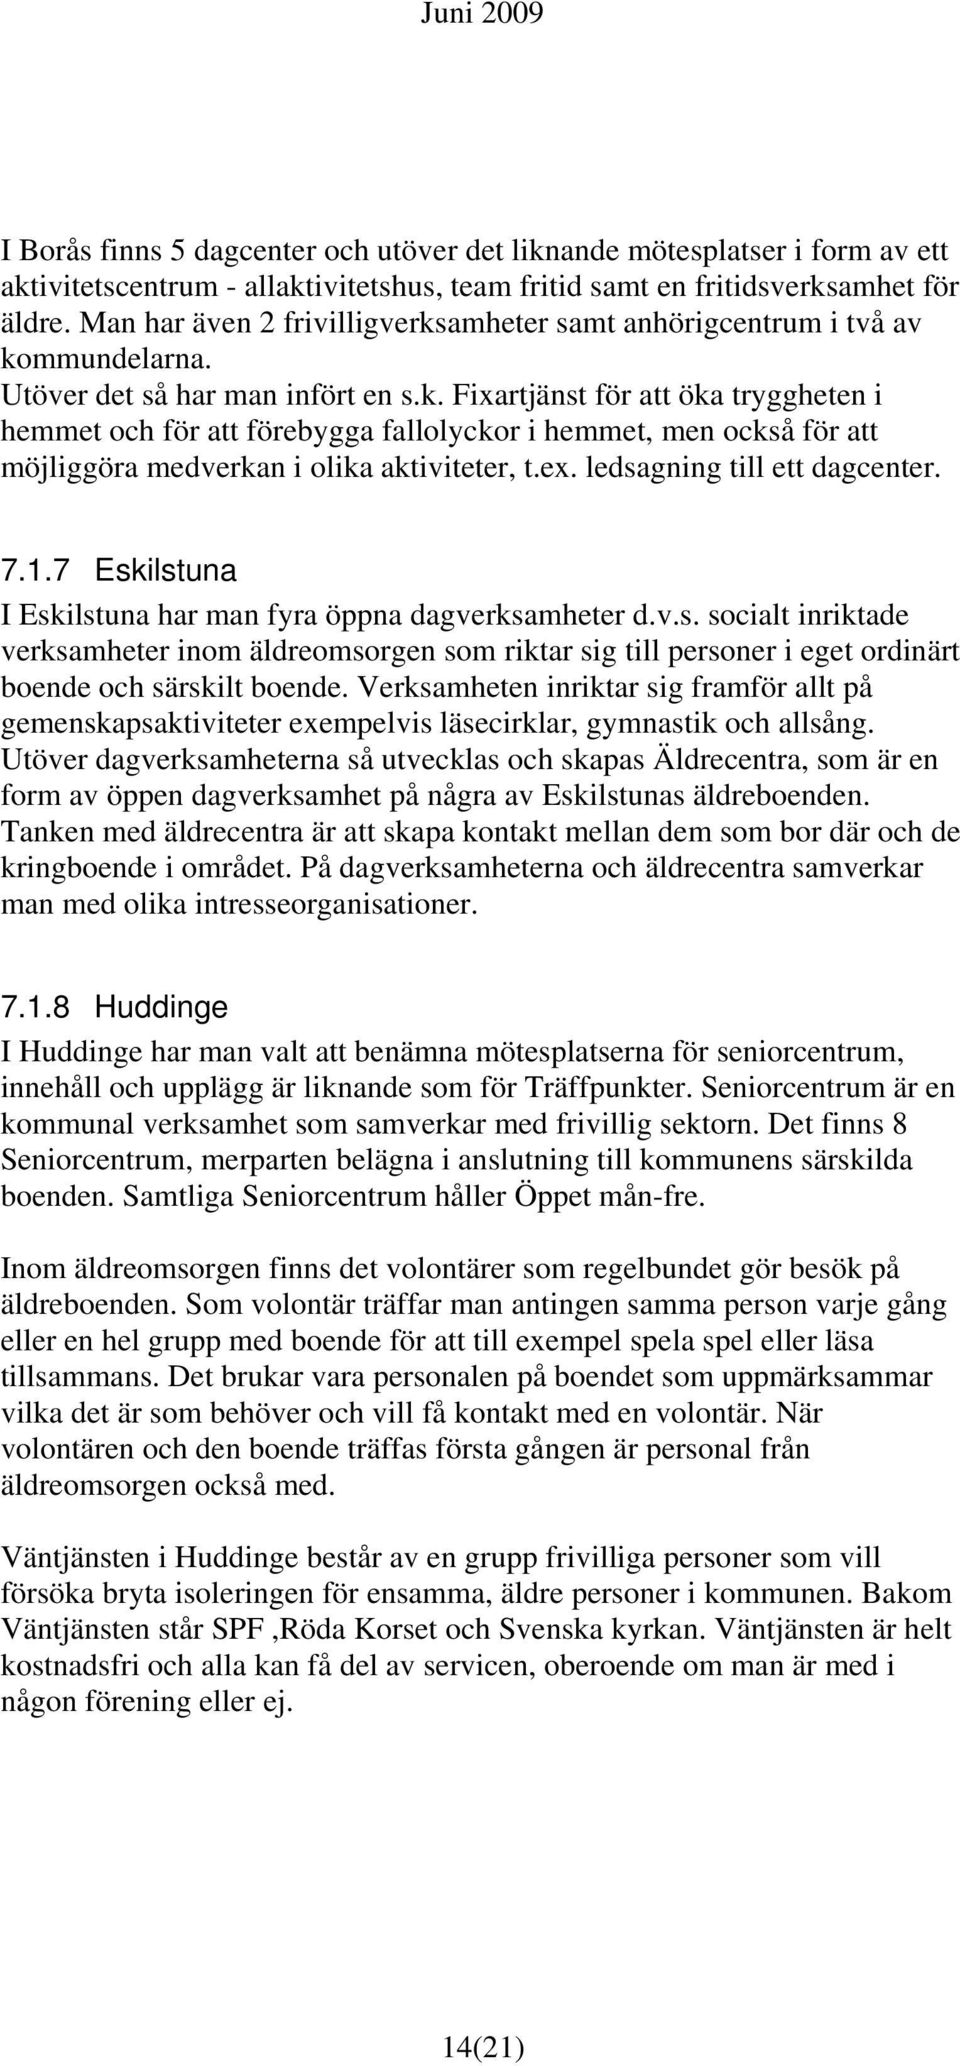 ex. ledsagning till ett dagcenter. 7.1.7 Eskilstuna I Eskilstuna har man fyra öppna dagverksamheter d.v.s. socialt inriktade verksamheter inom äldreomsorgen som riktar sig till personer i eget ordinärt boende och särskilt boende.